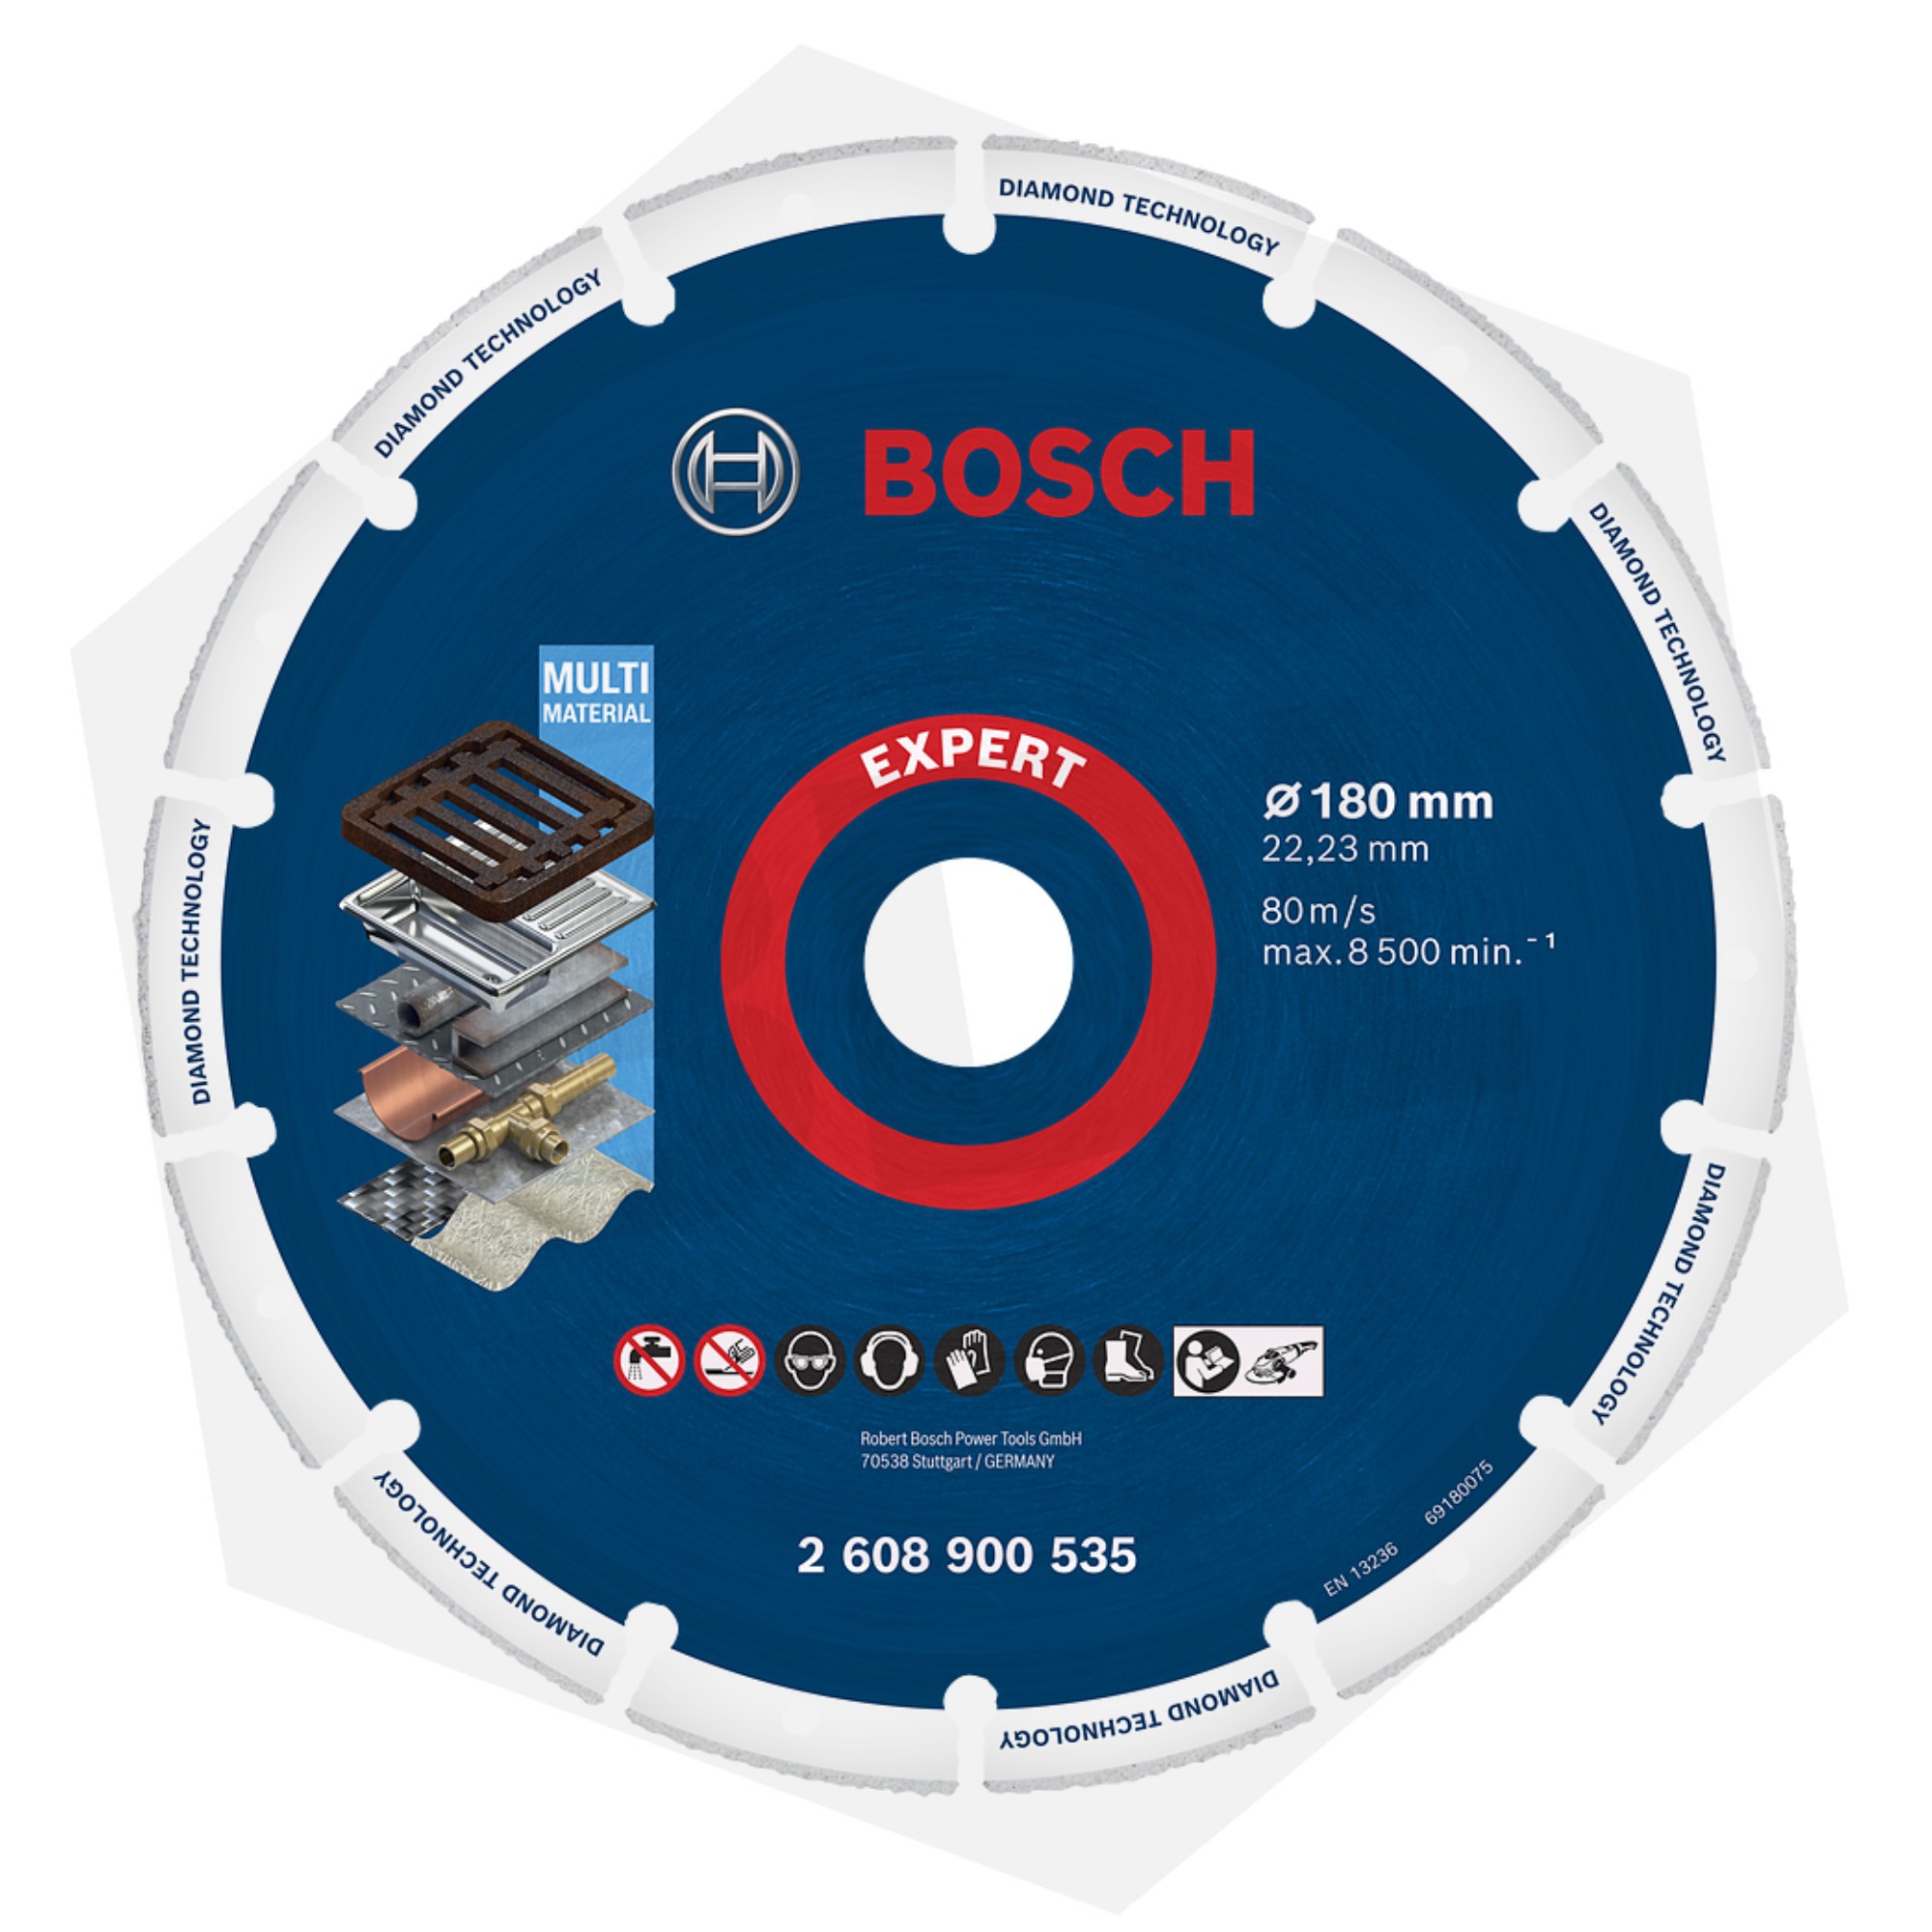 Bosch EXPERT: accesorios de alto rendimiento para herramientas eléctricas 